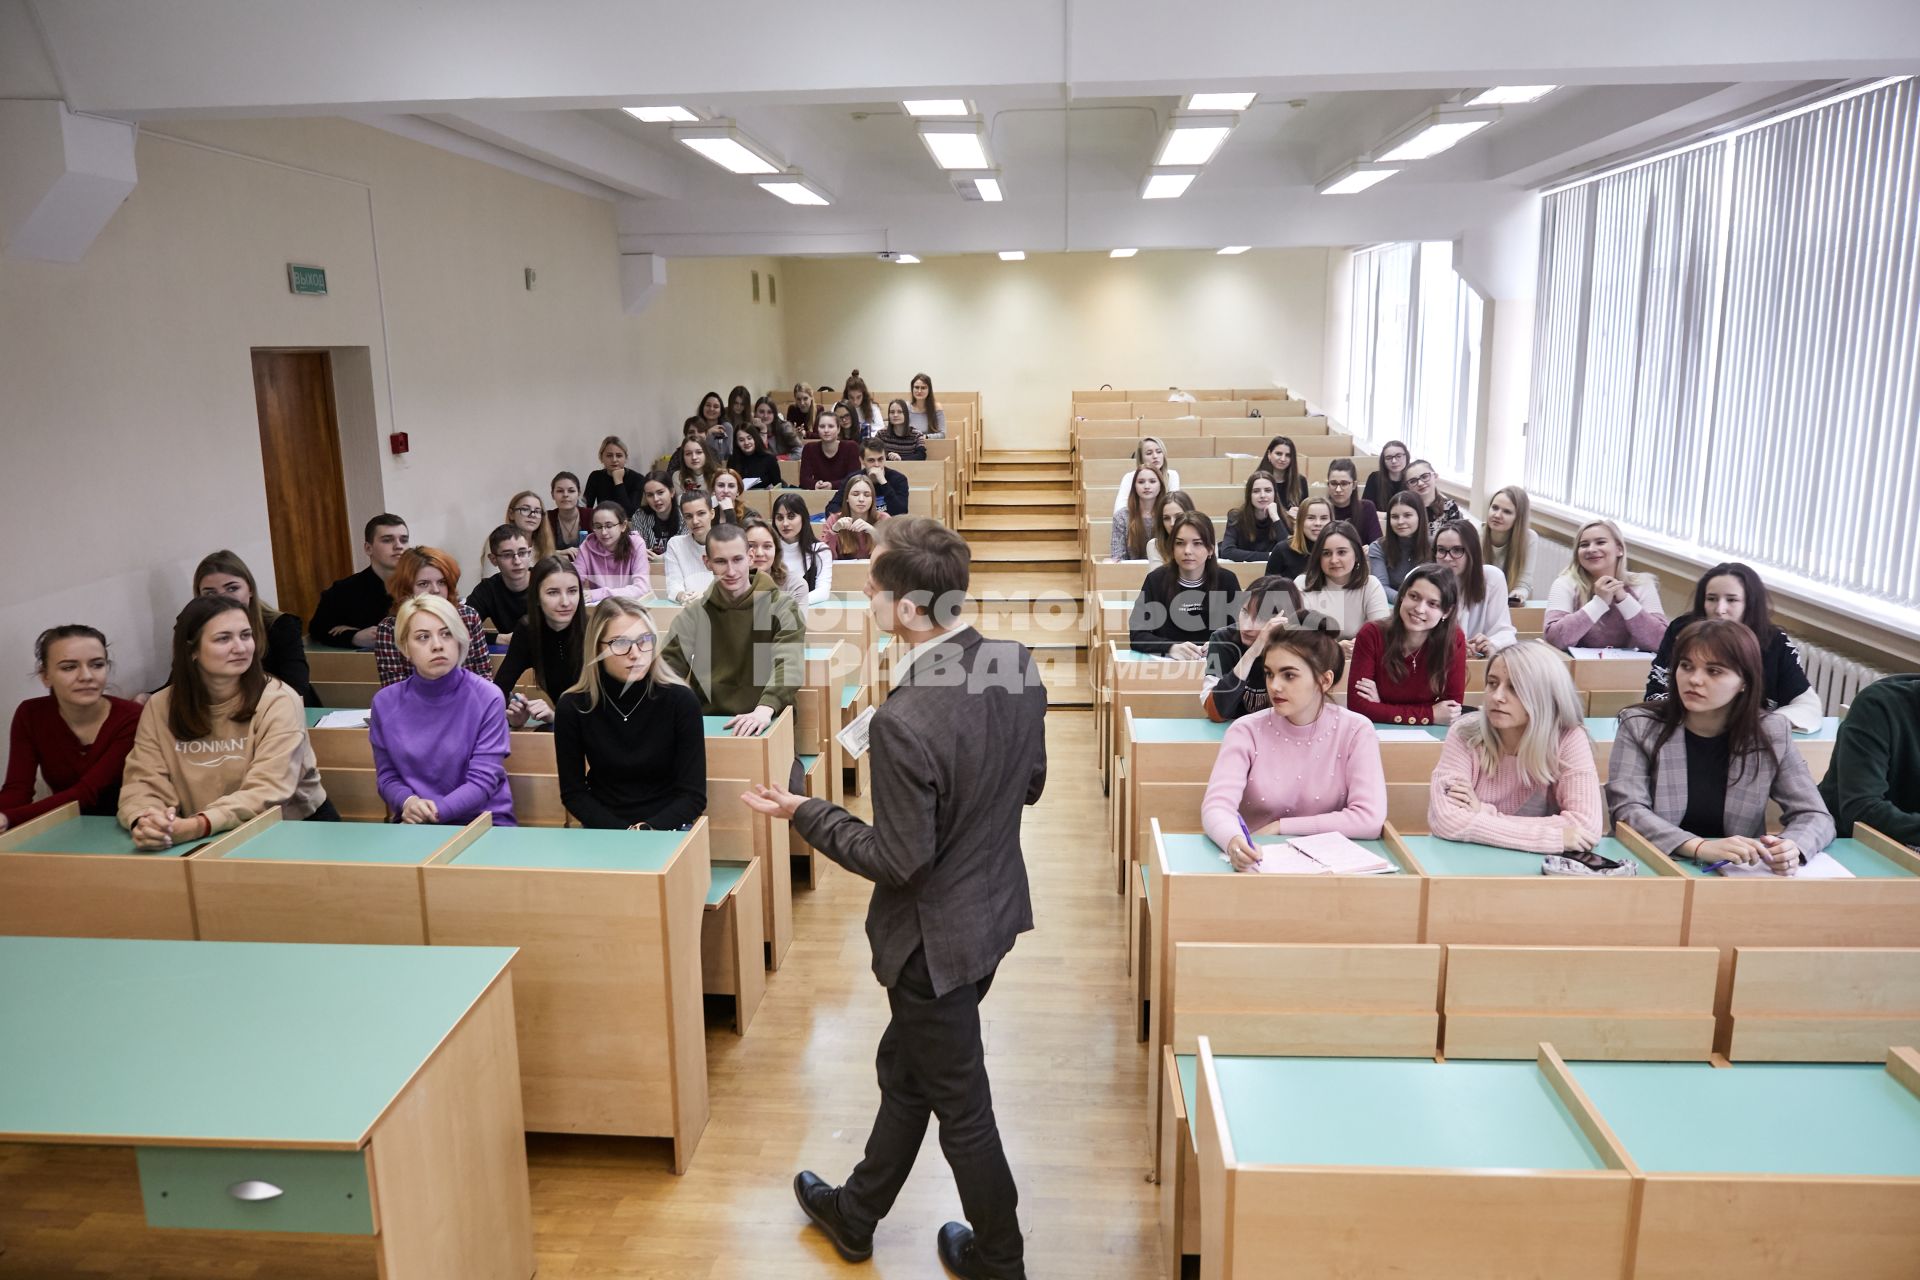 Белоруссия. Минск. Студенты на лекции в аудитории.